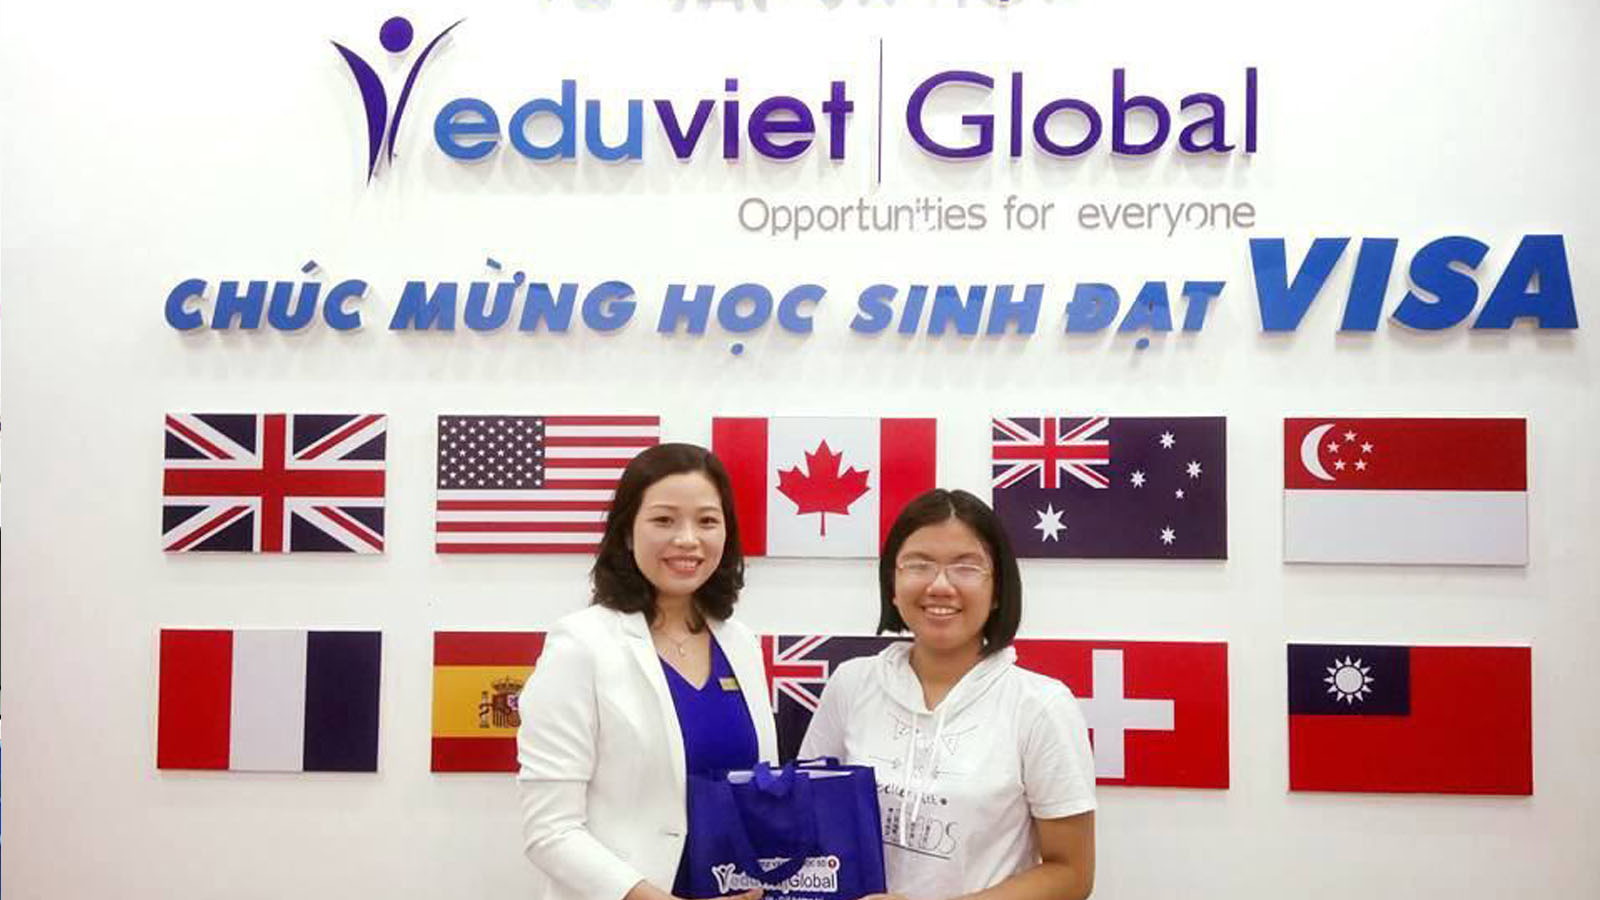 Chúc mừng học sinh đạt Visa tại trung tâm tư vấn du học EduViet Global